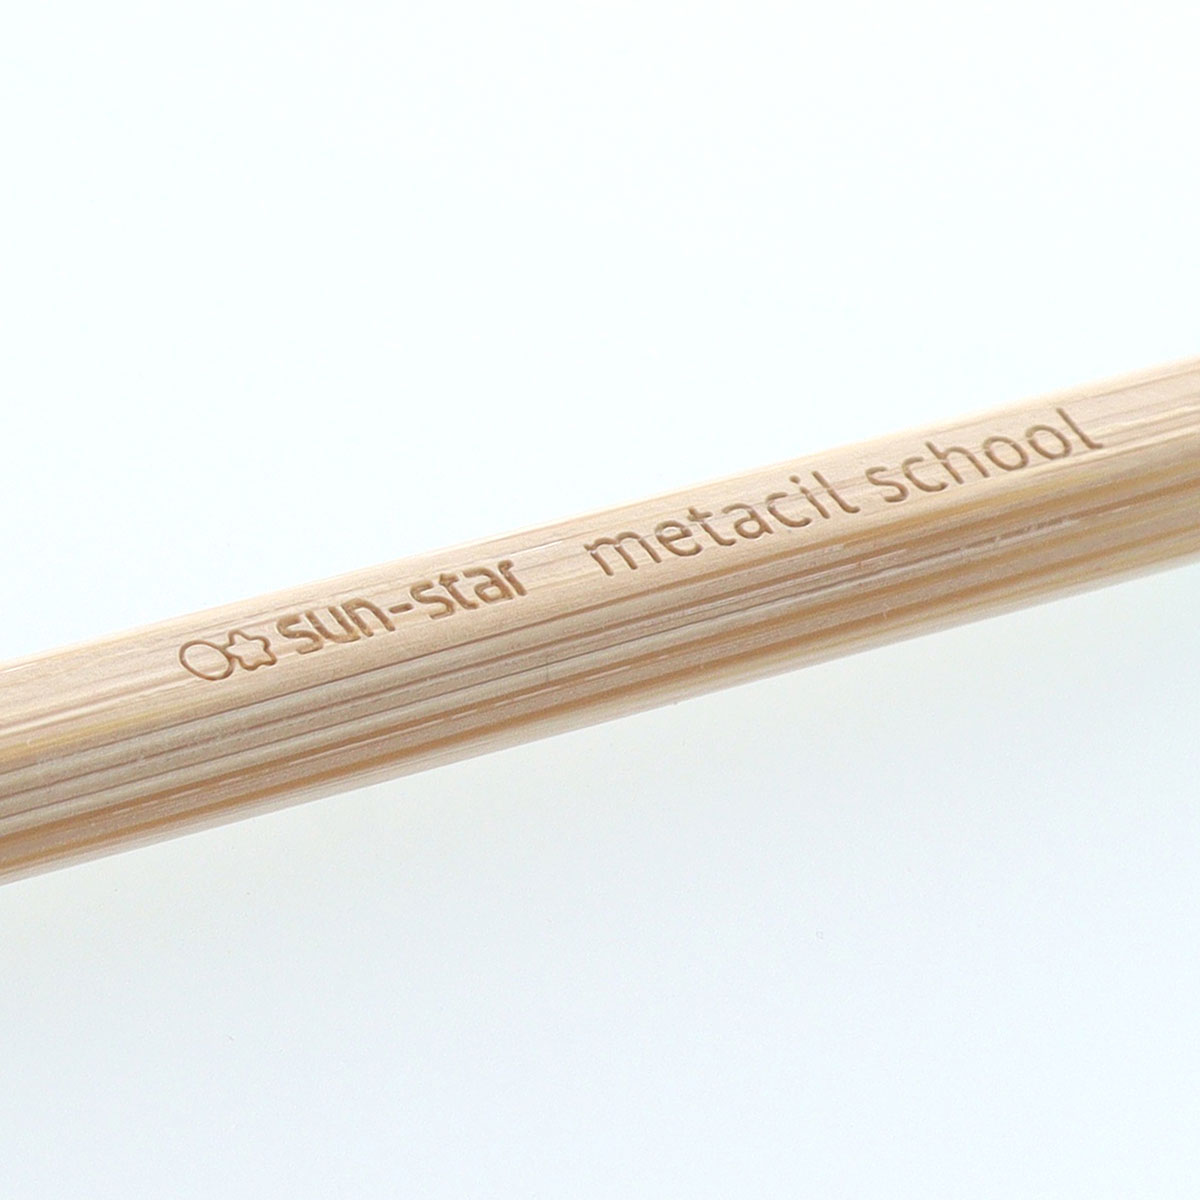 メタシルスクール 竹製軸